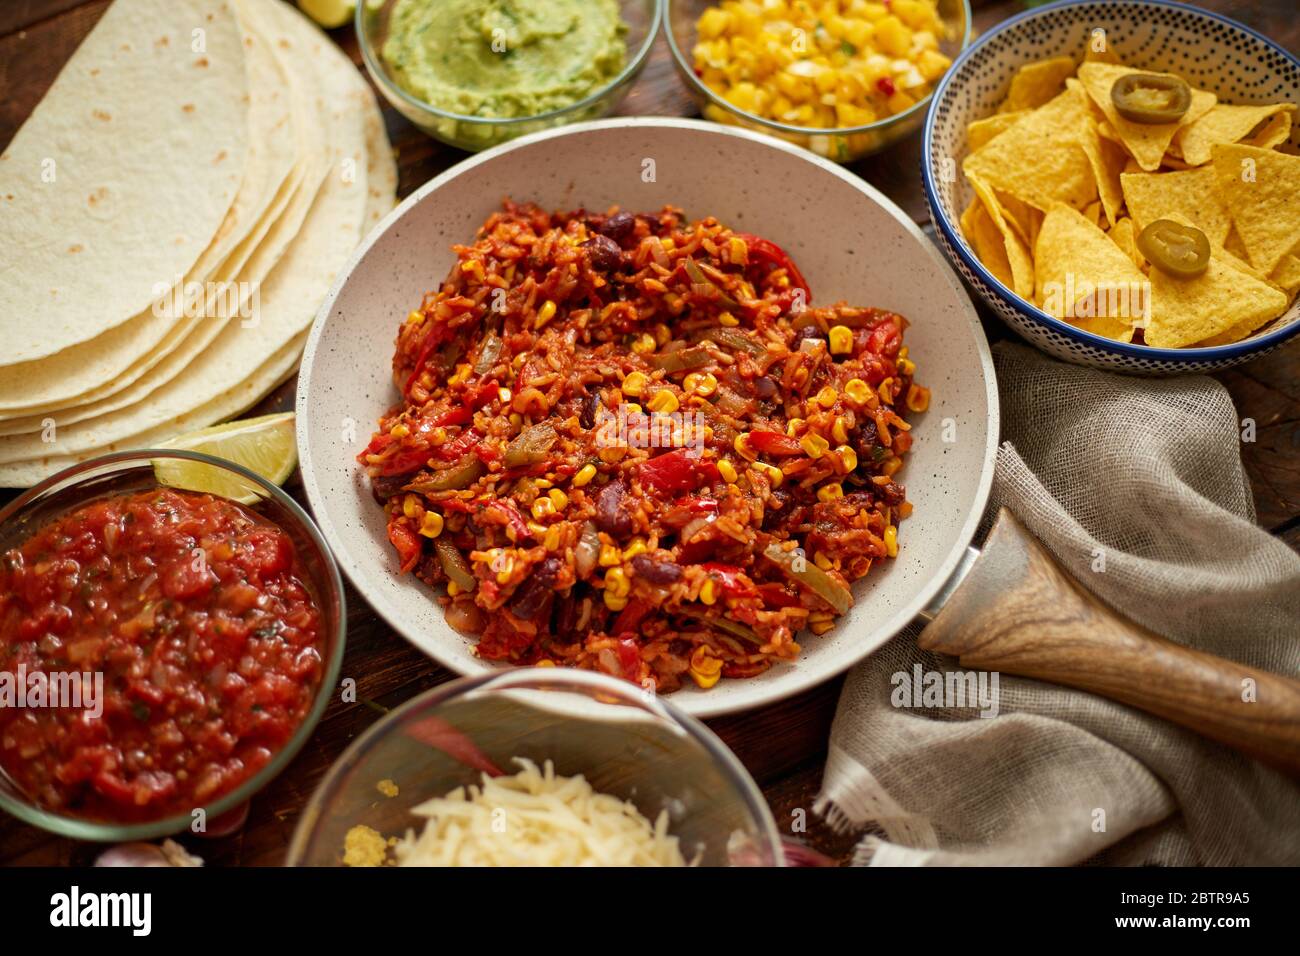 Concept de cuisine mexicaine. Burritos de légumes. Servi sur une poêle. Tortilla guacamole, salsa, Chili et haricots Banque D'Images